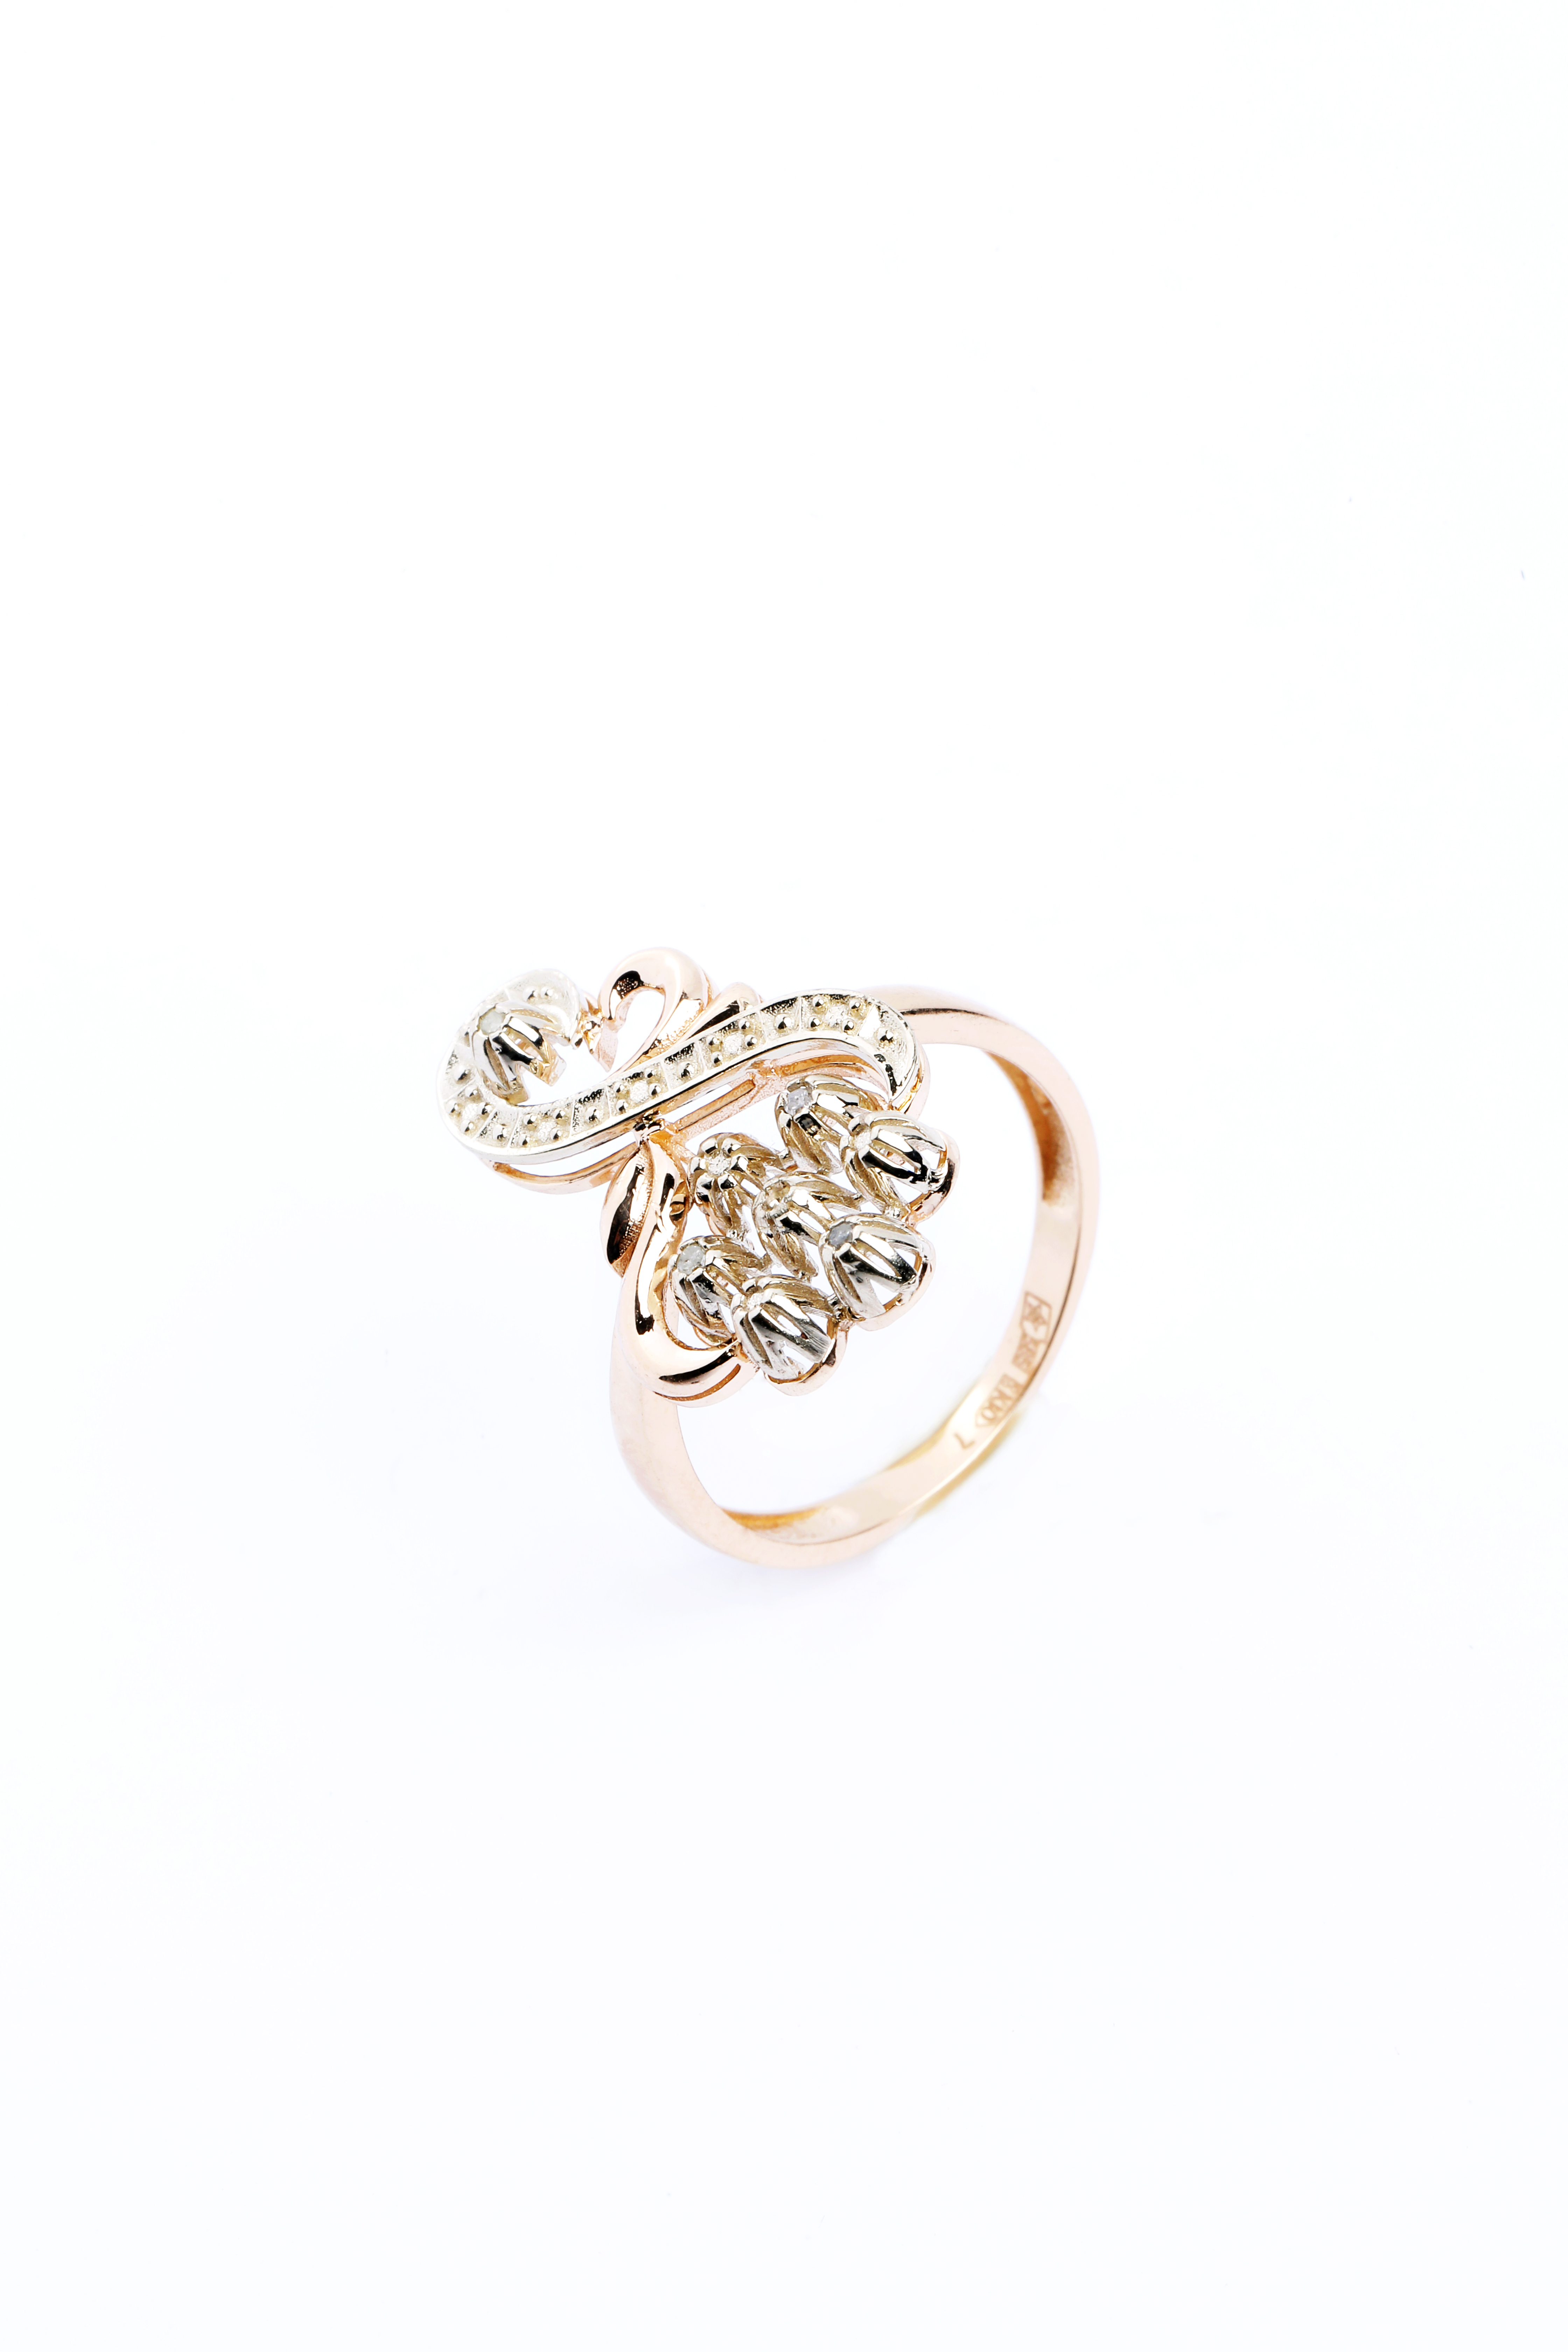 Золотое кольцо с завитками. Кольцо завиток. Tilla uzuklar. Кольца из Узбекистана.